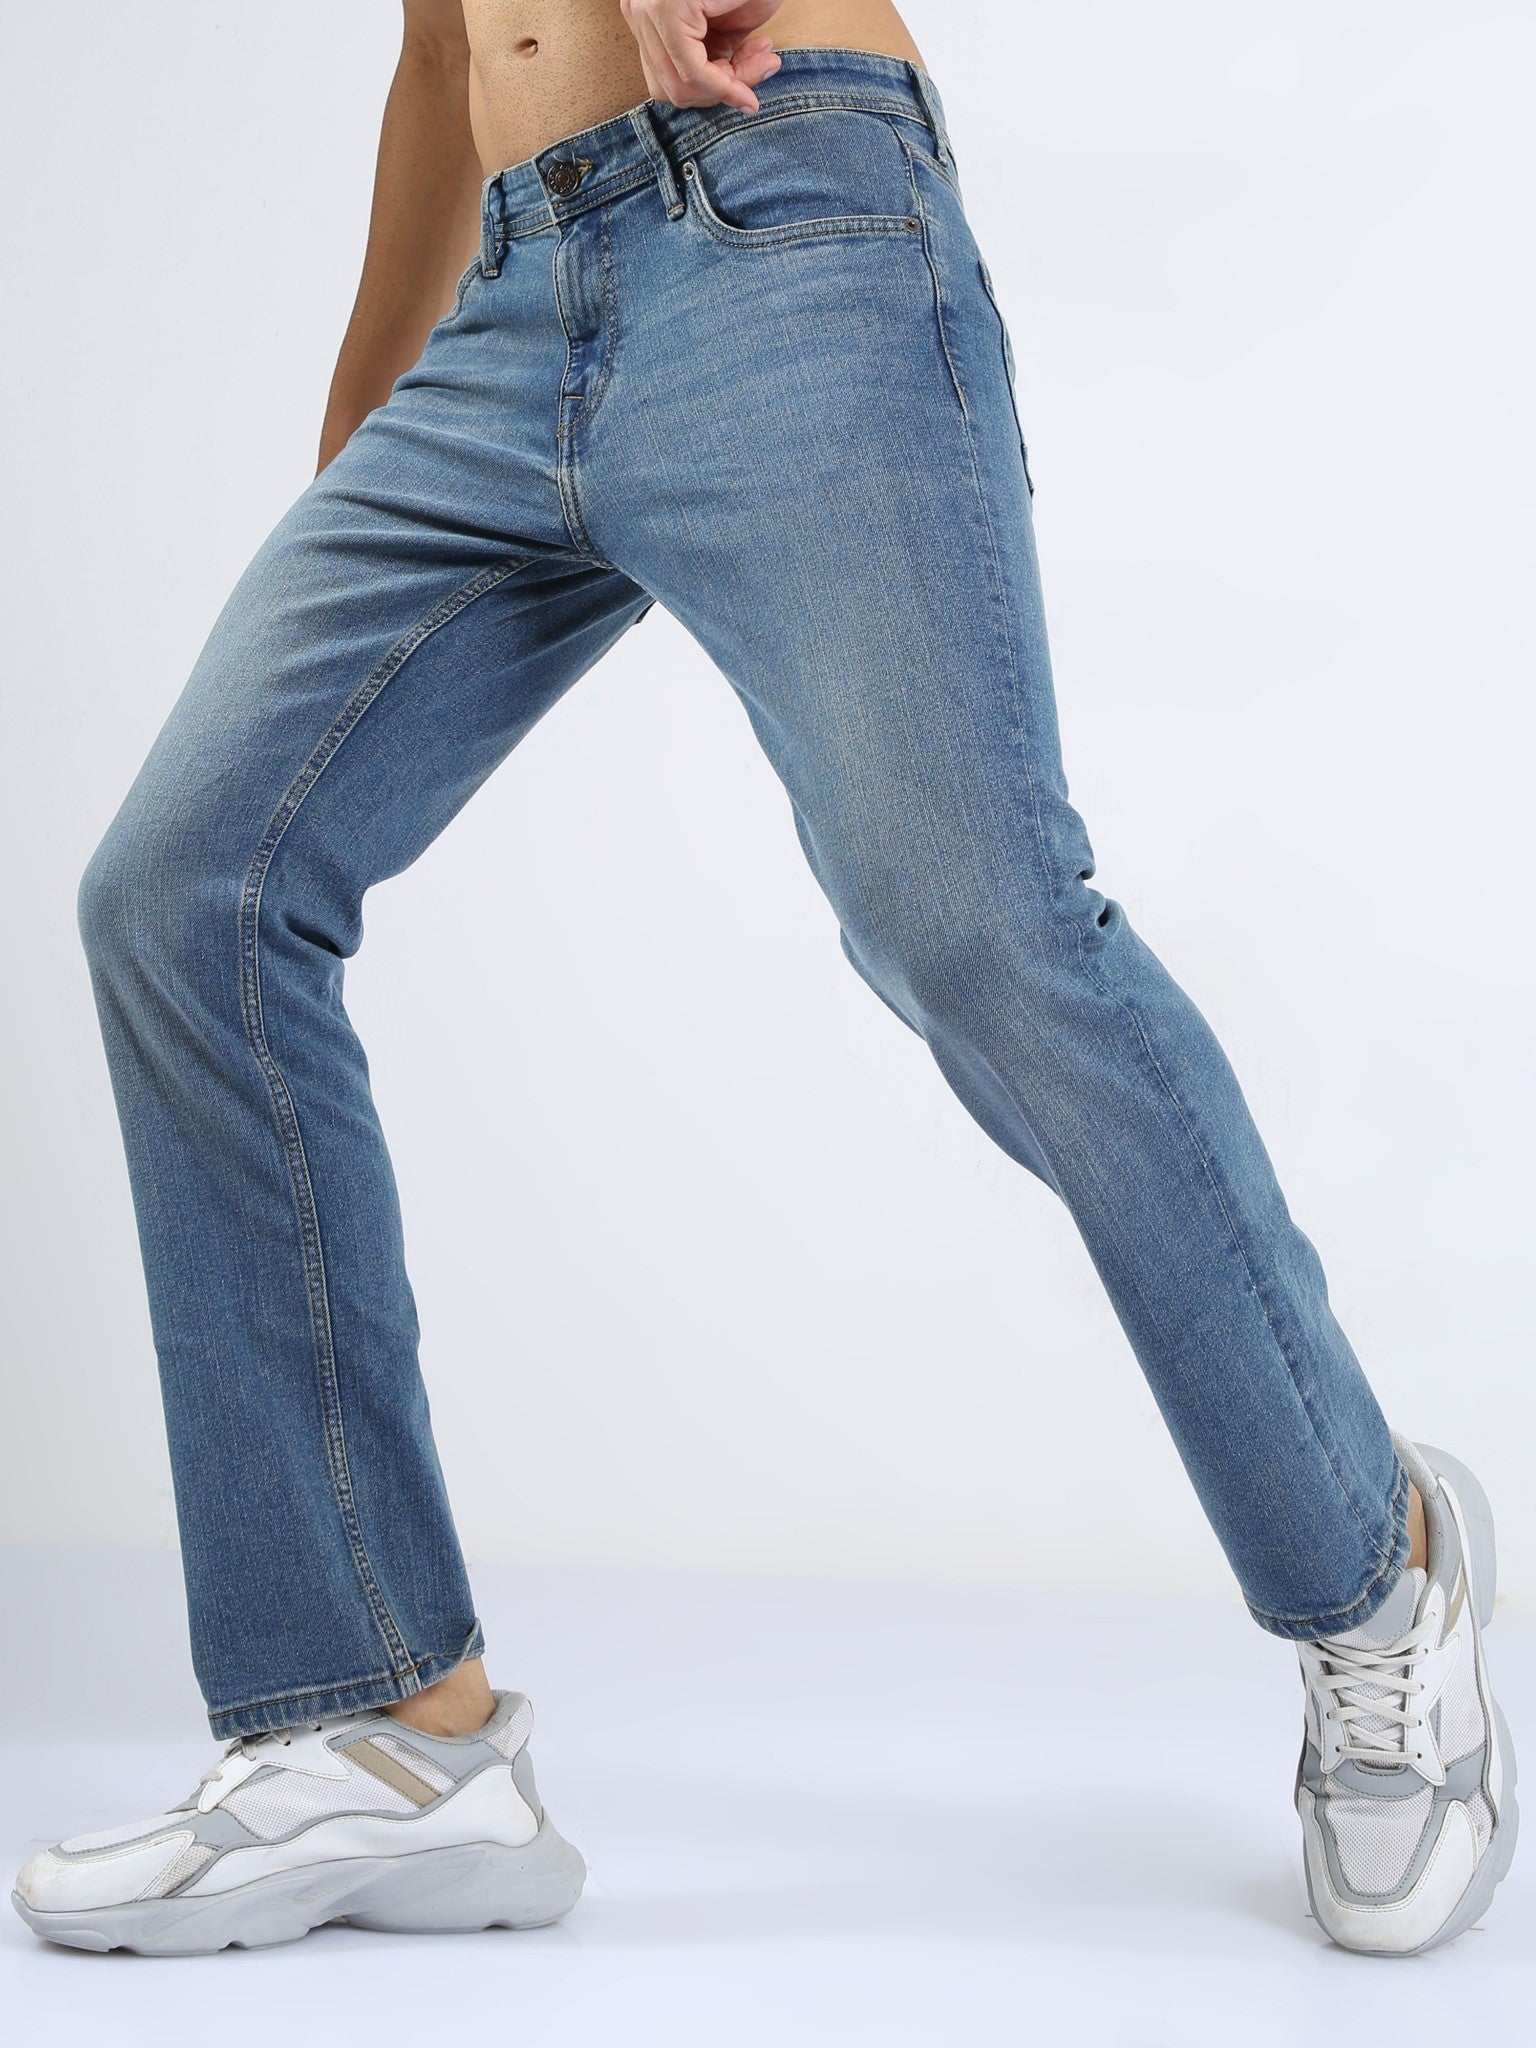 Xander Desert Blue Loose Jeans for Men